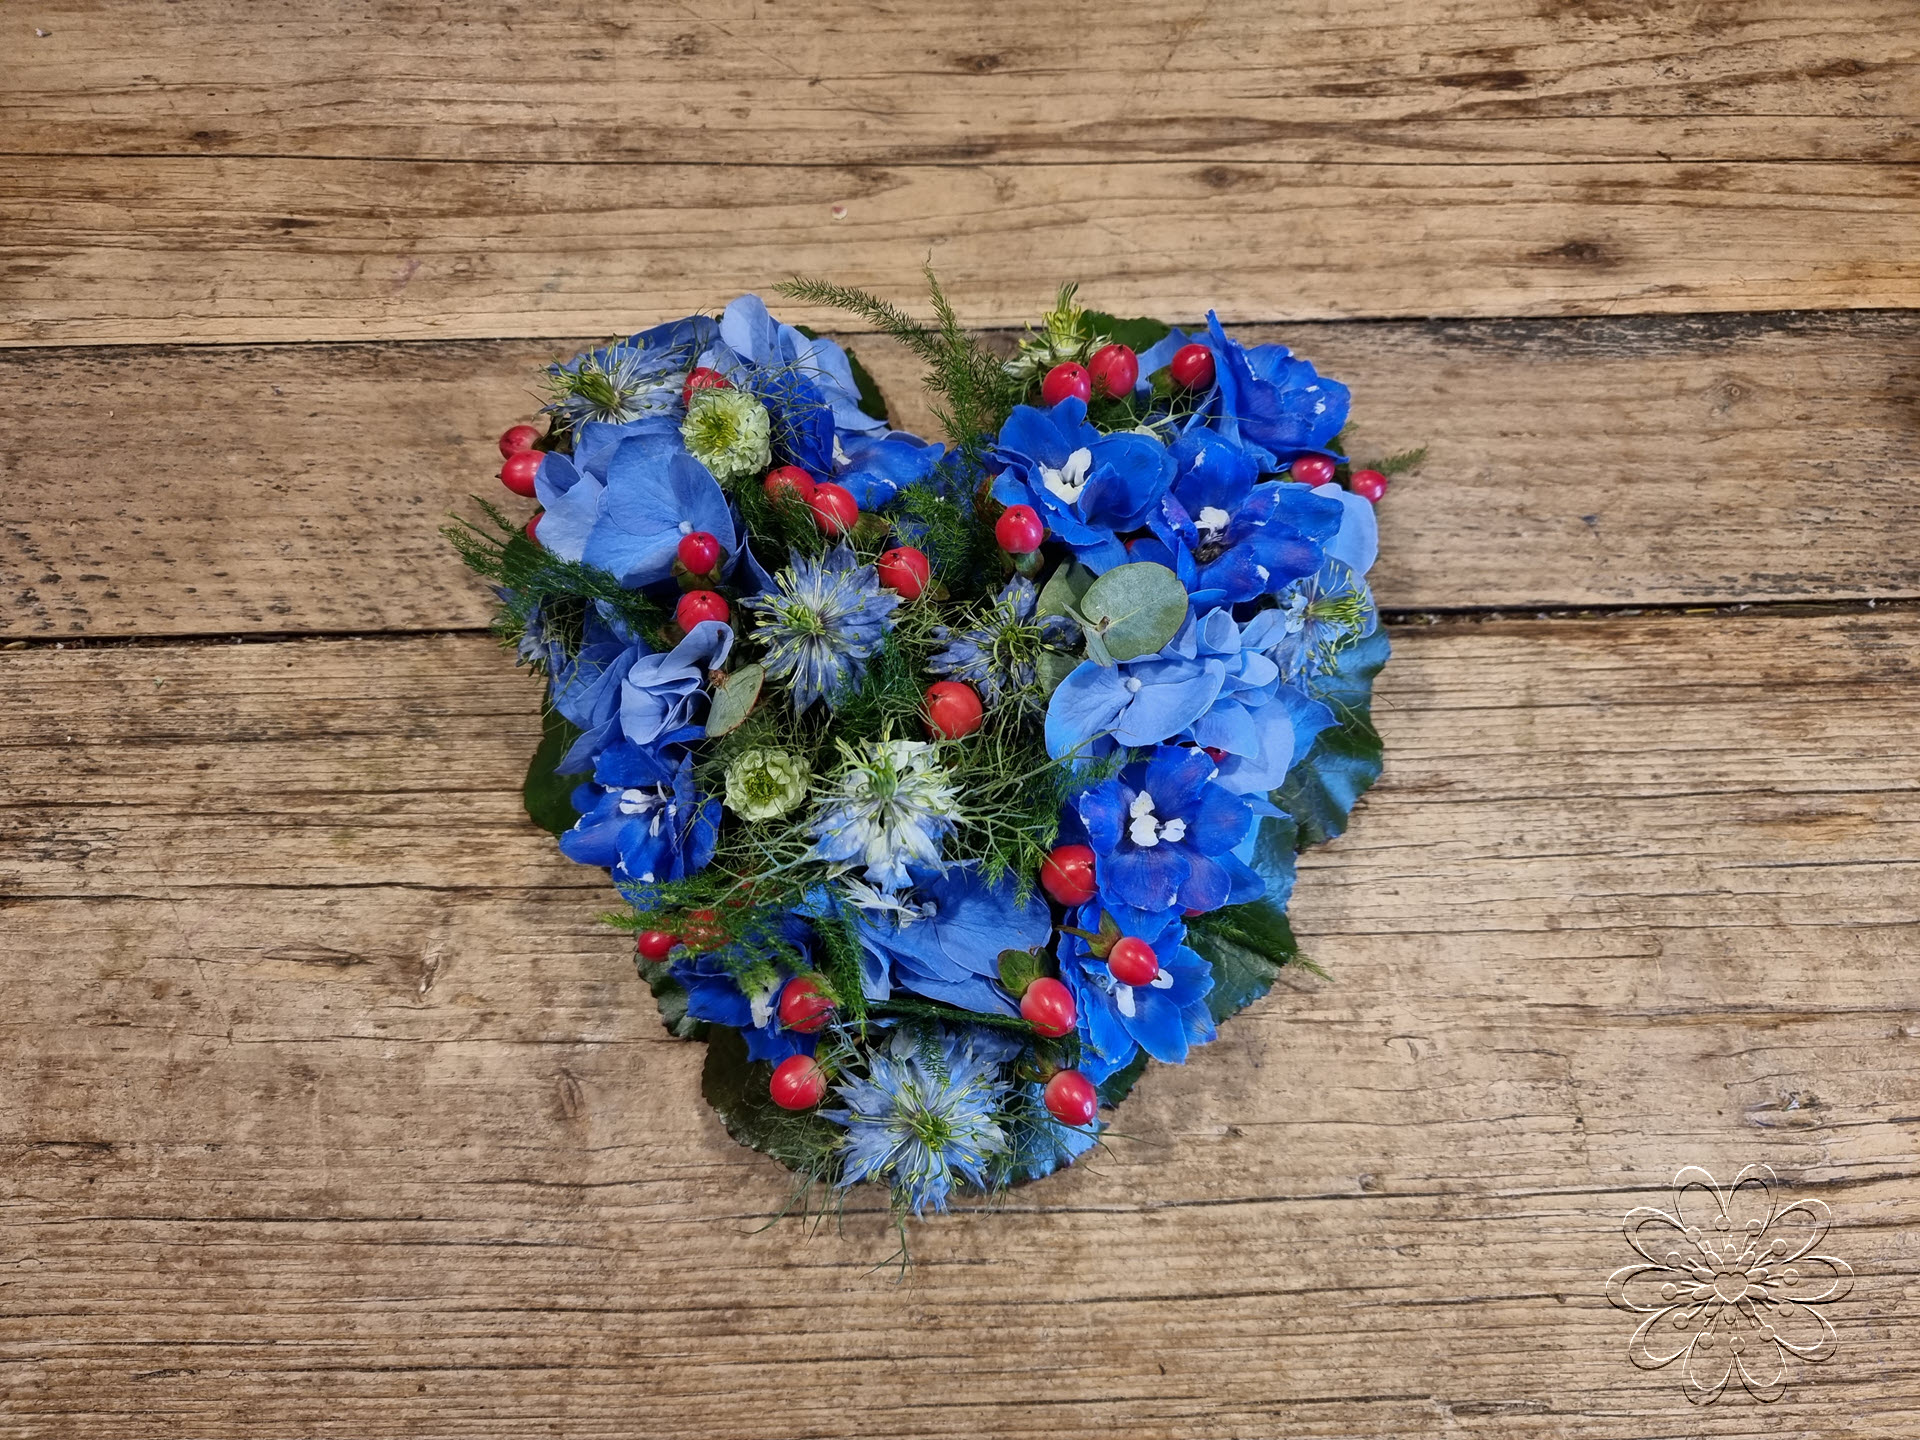 Bloemsierkunst Groeneveld bloemen uitvaart hartvorm klein blauw